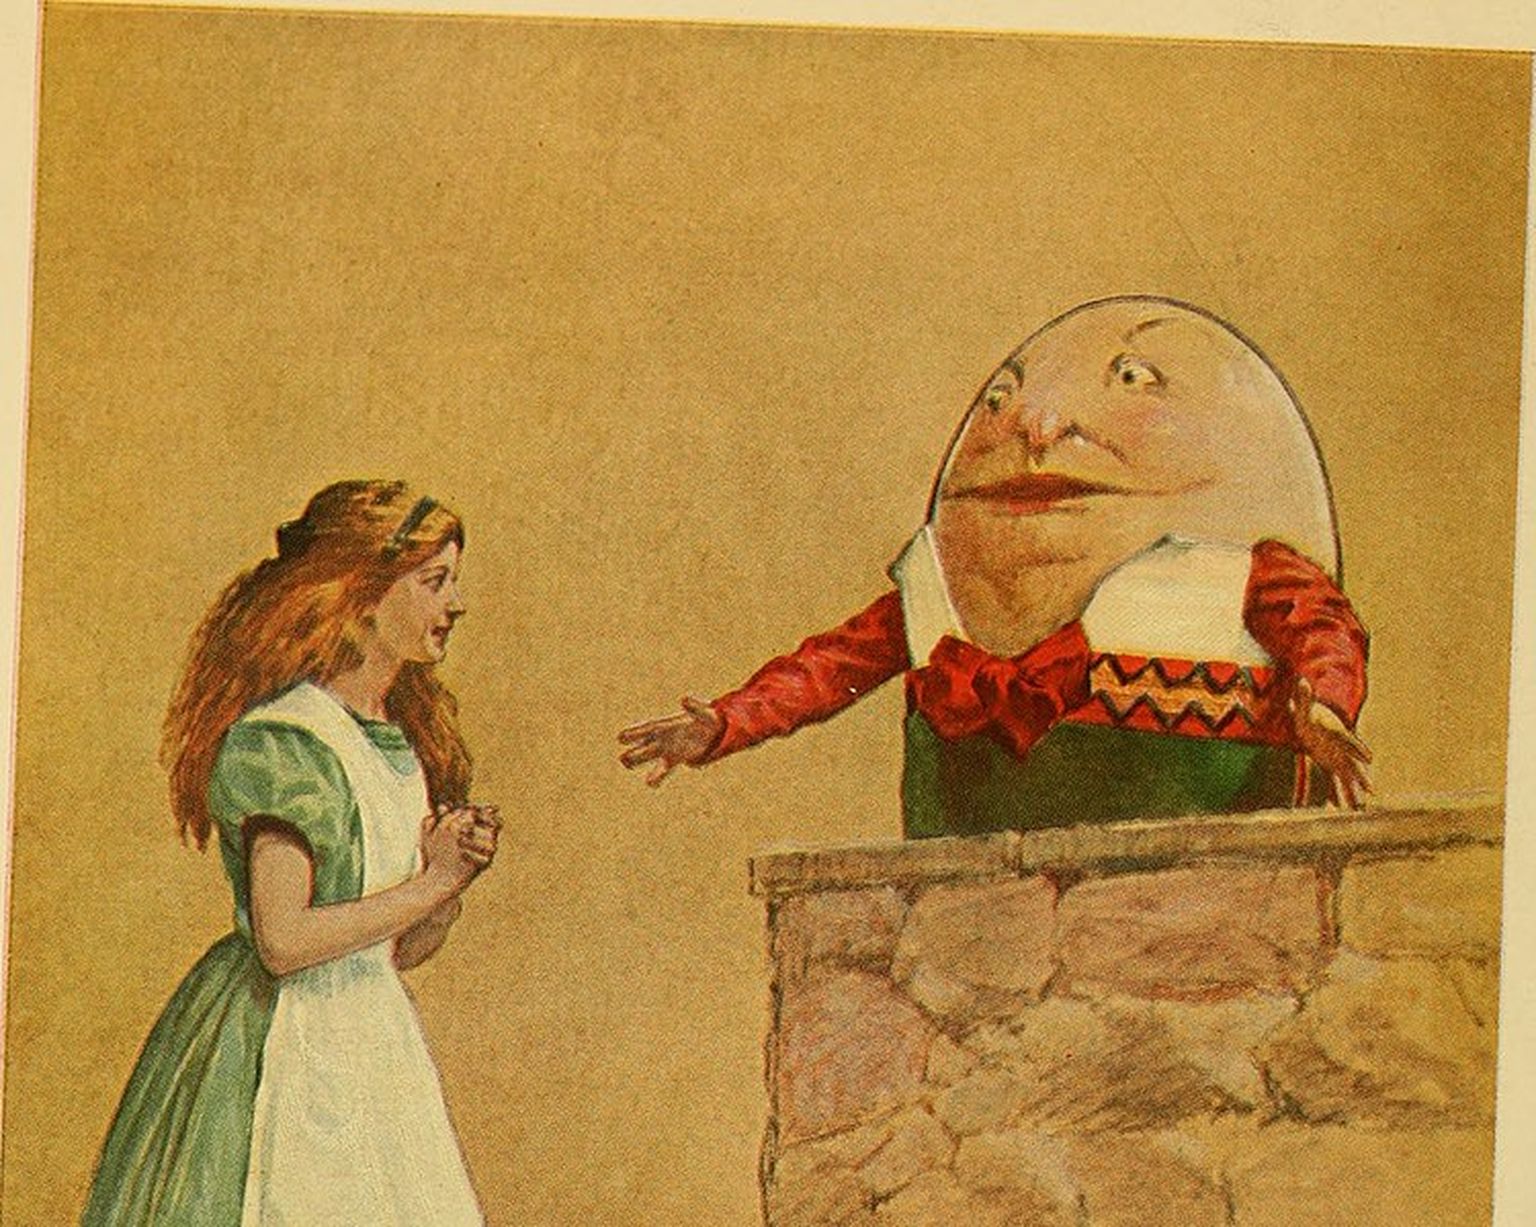 Ilustrācija no grāmatas "Alise Brīnumzemē", 1915. gads